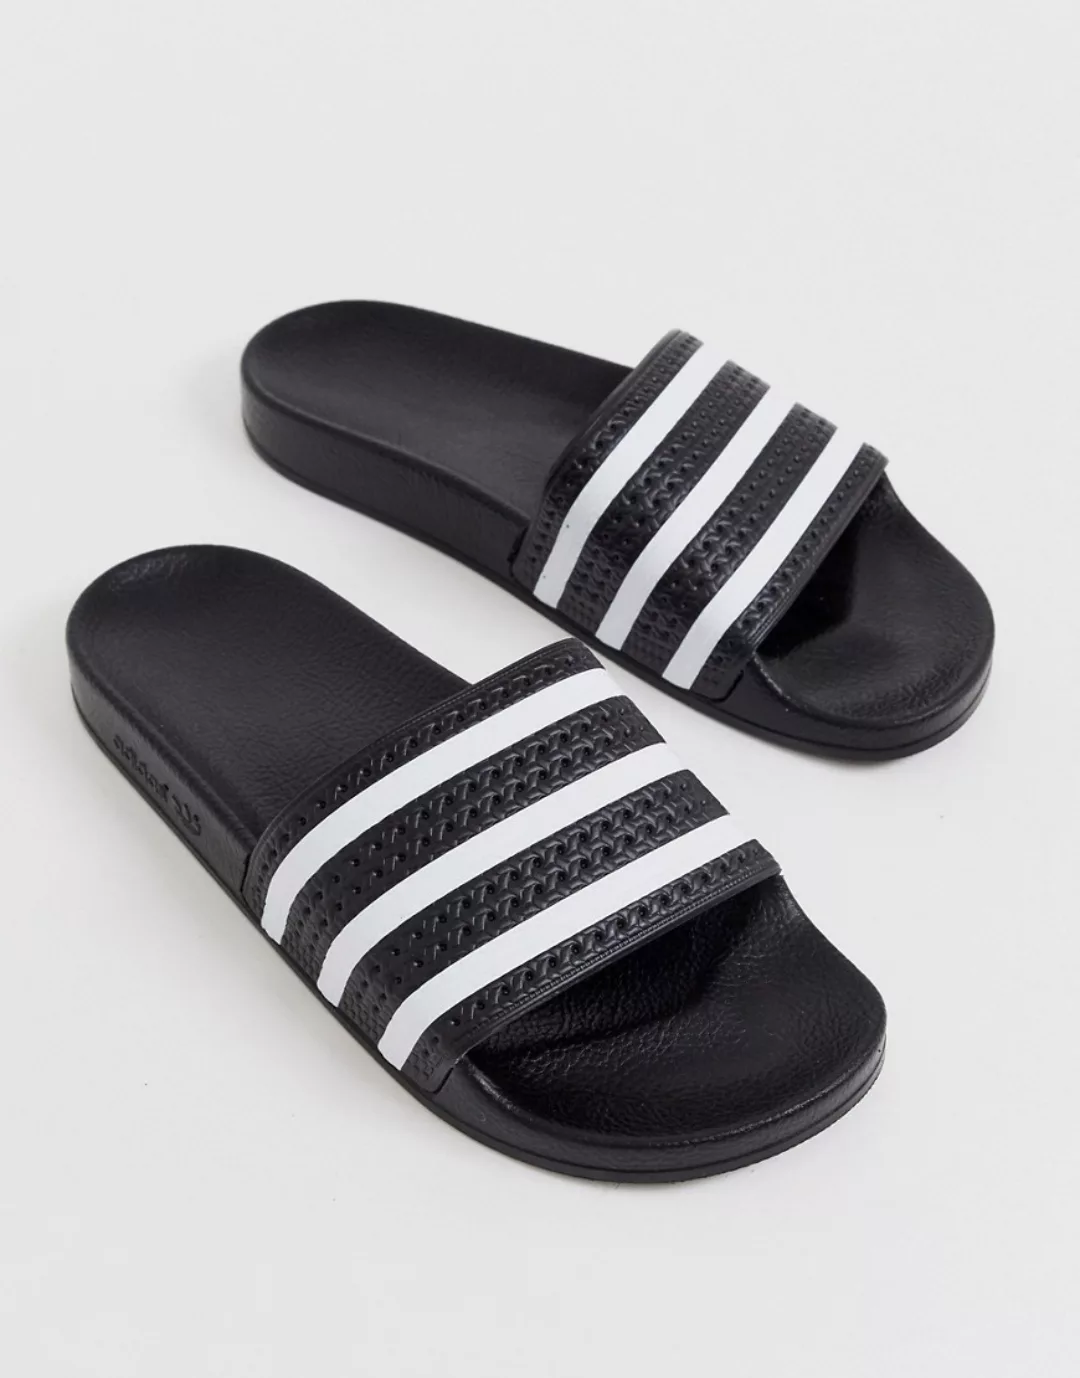 Adidas Originals 3 Stripes Strand Badeanzug M Black günstig online kaufen